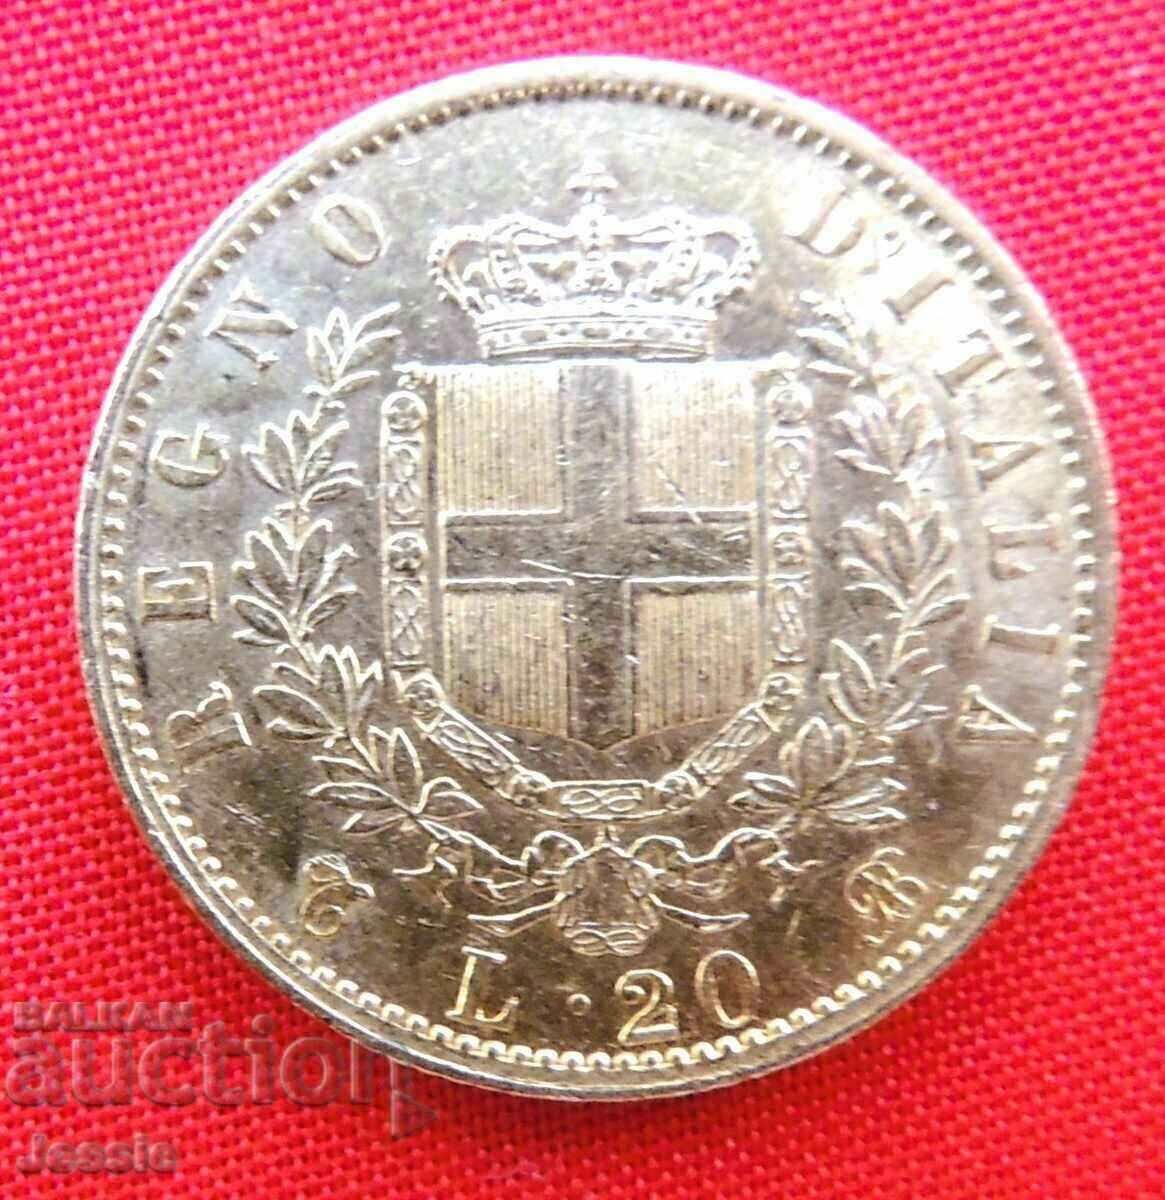 20 Lire 1863 Italy (20 Lire Italy) (gold)